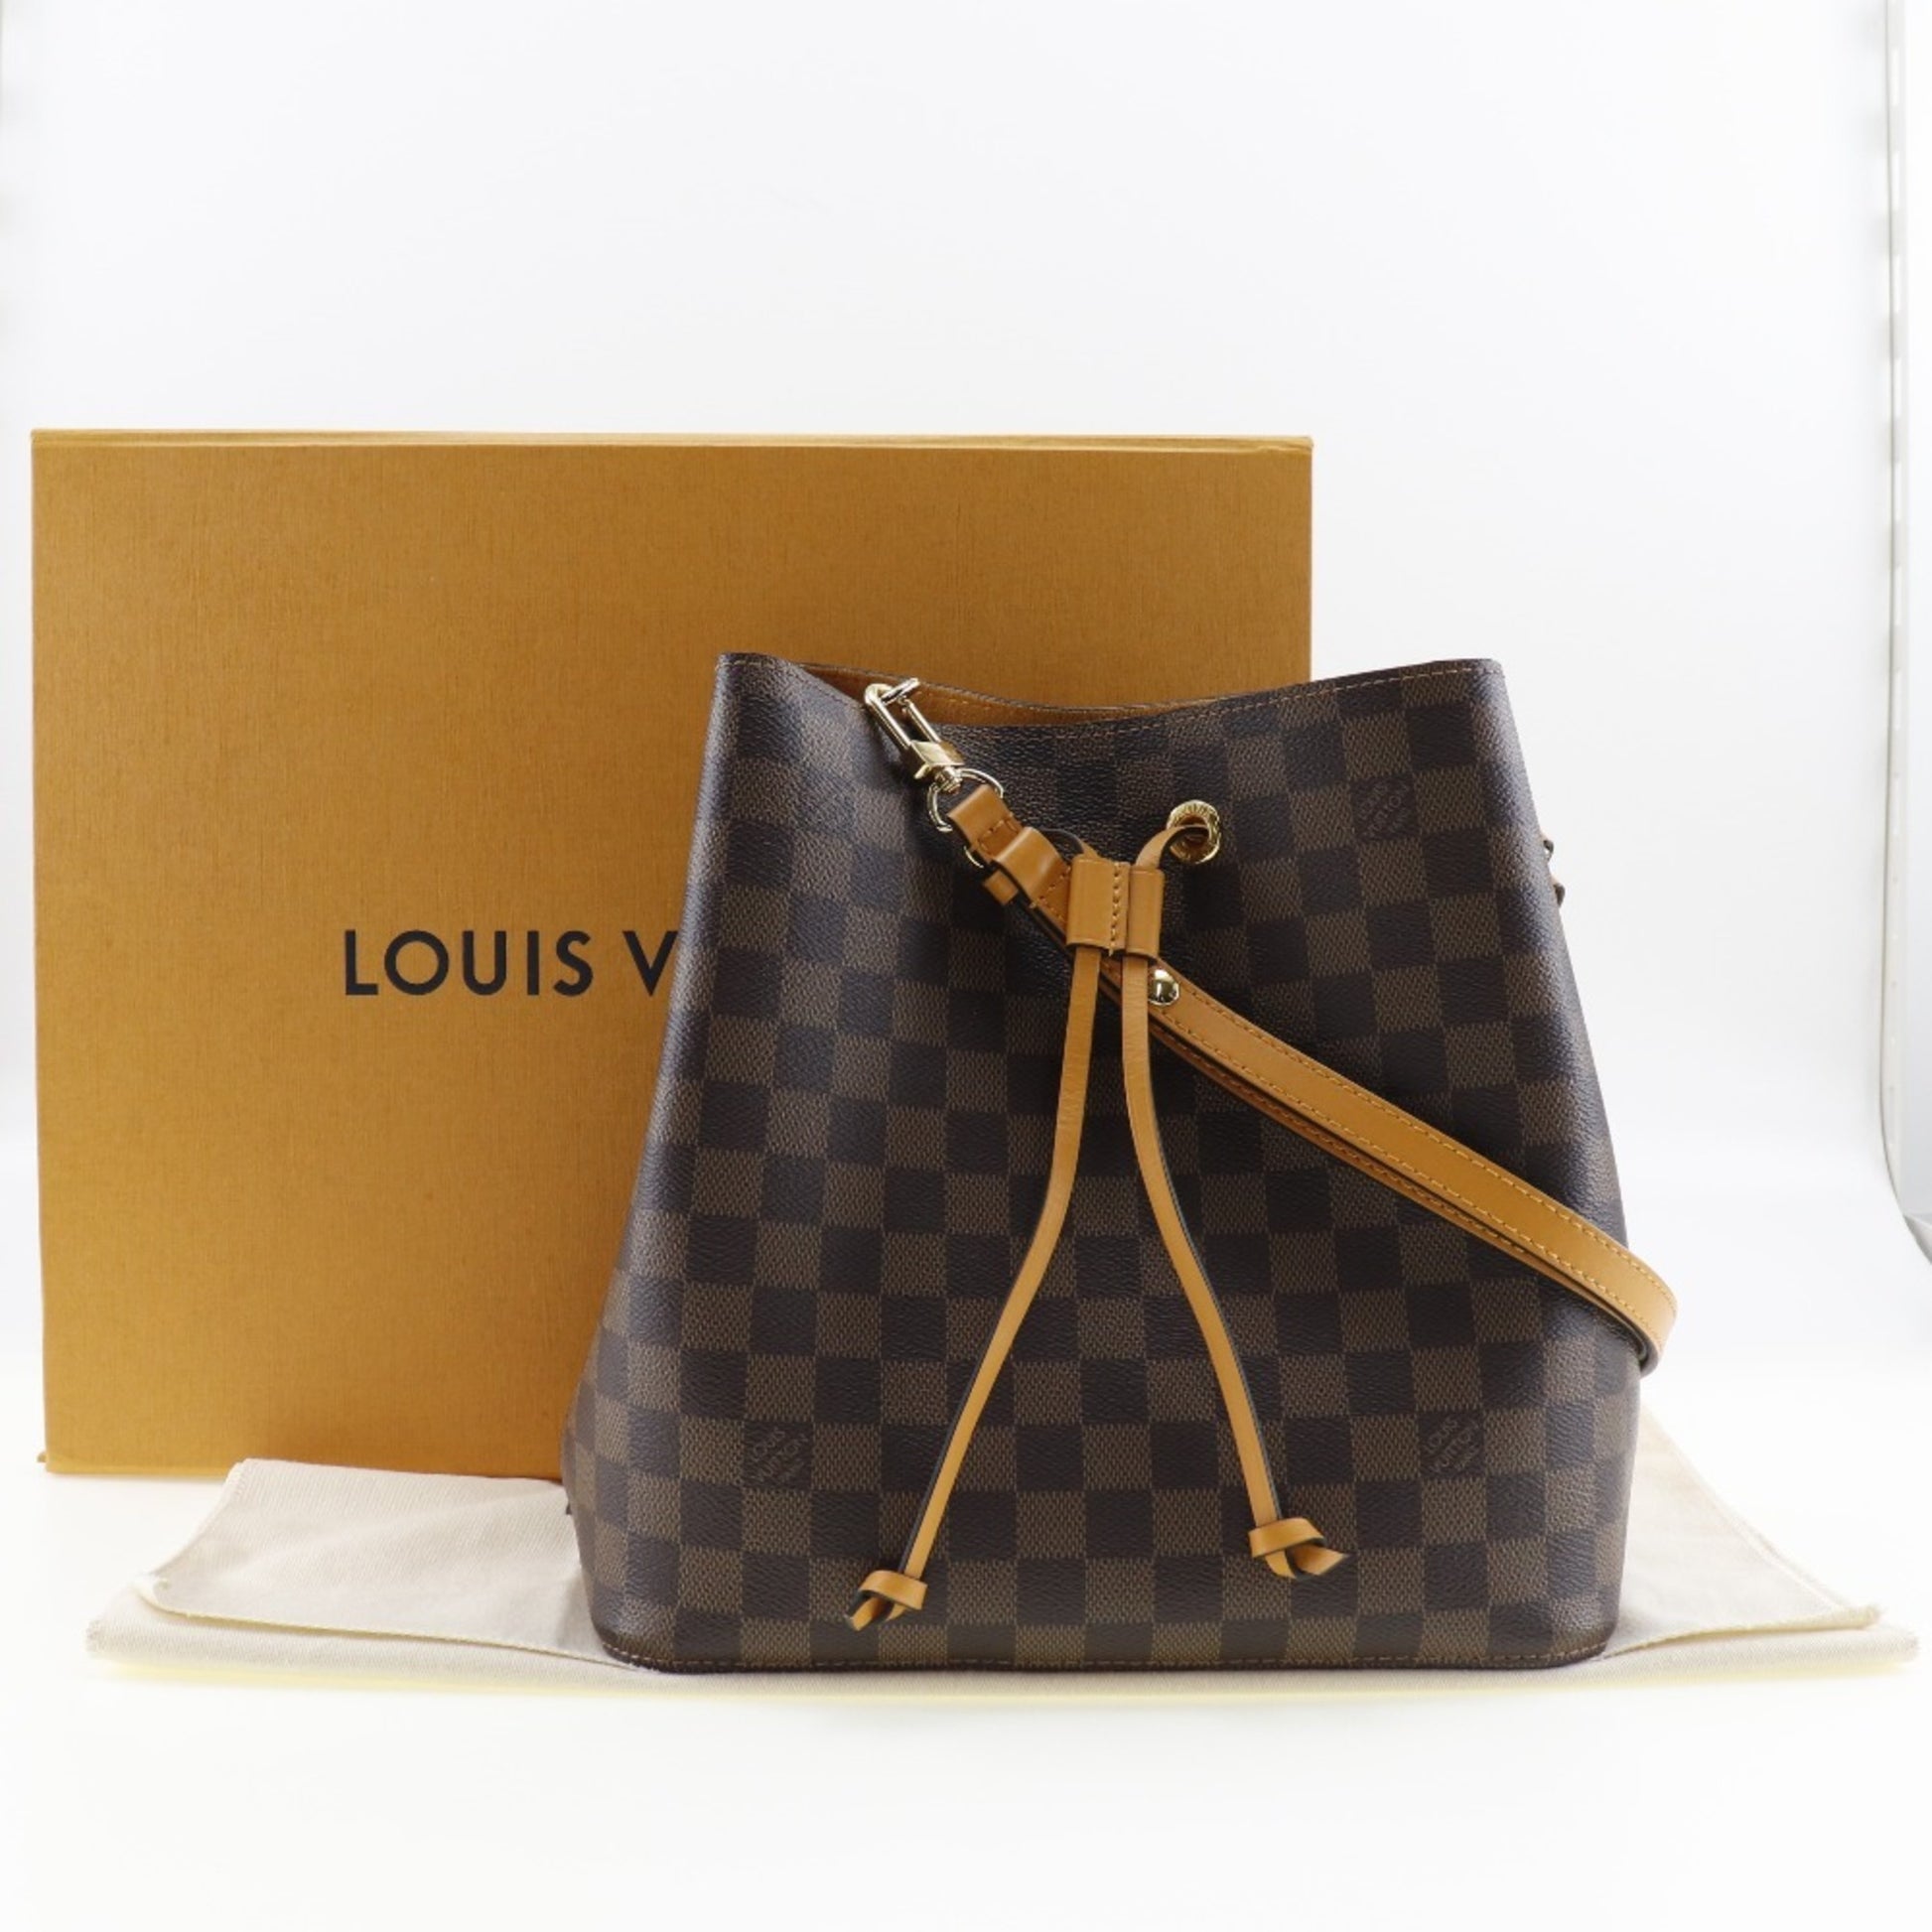 Louis Vuitton Venus Damier Canvas NeoNoe Bag